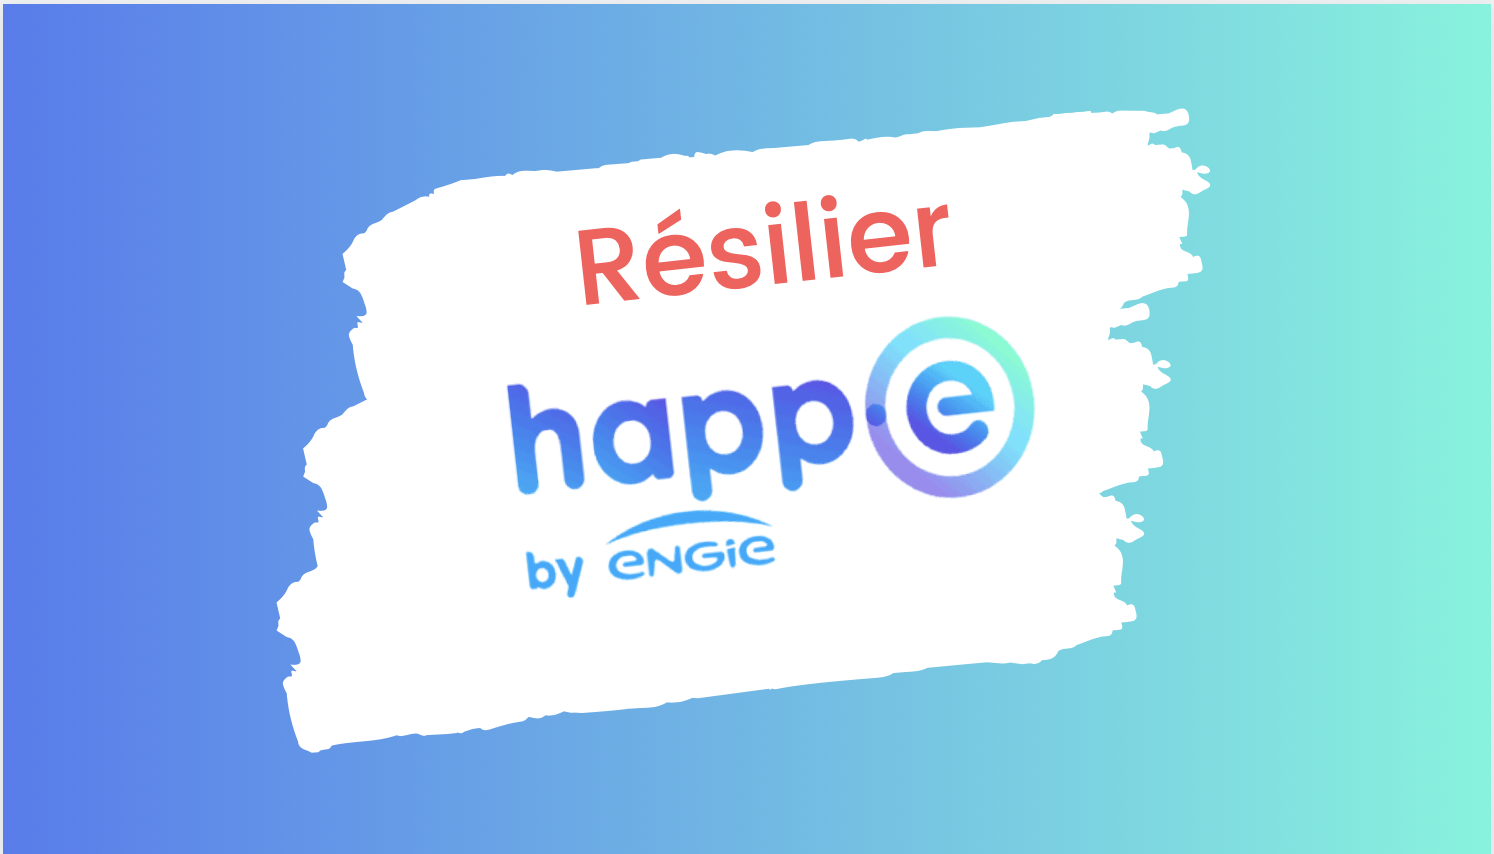 Résiliation happ-e by engie